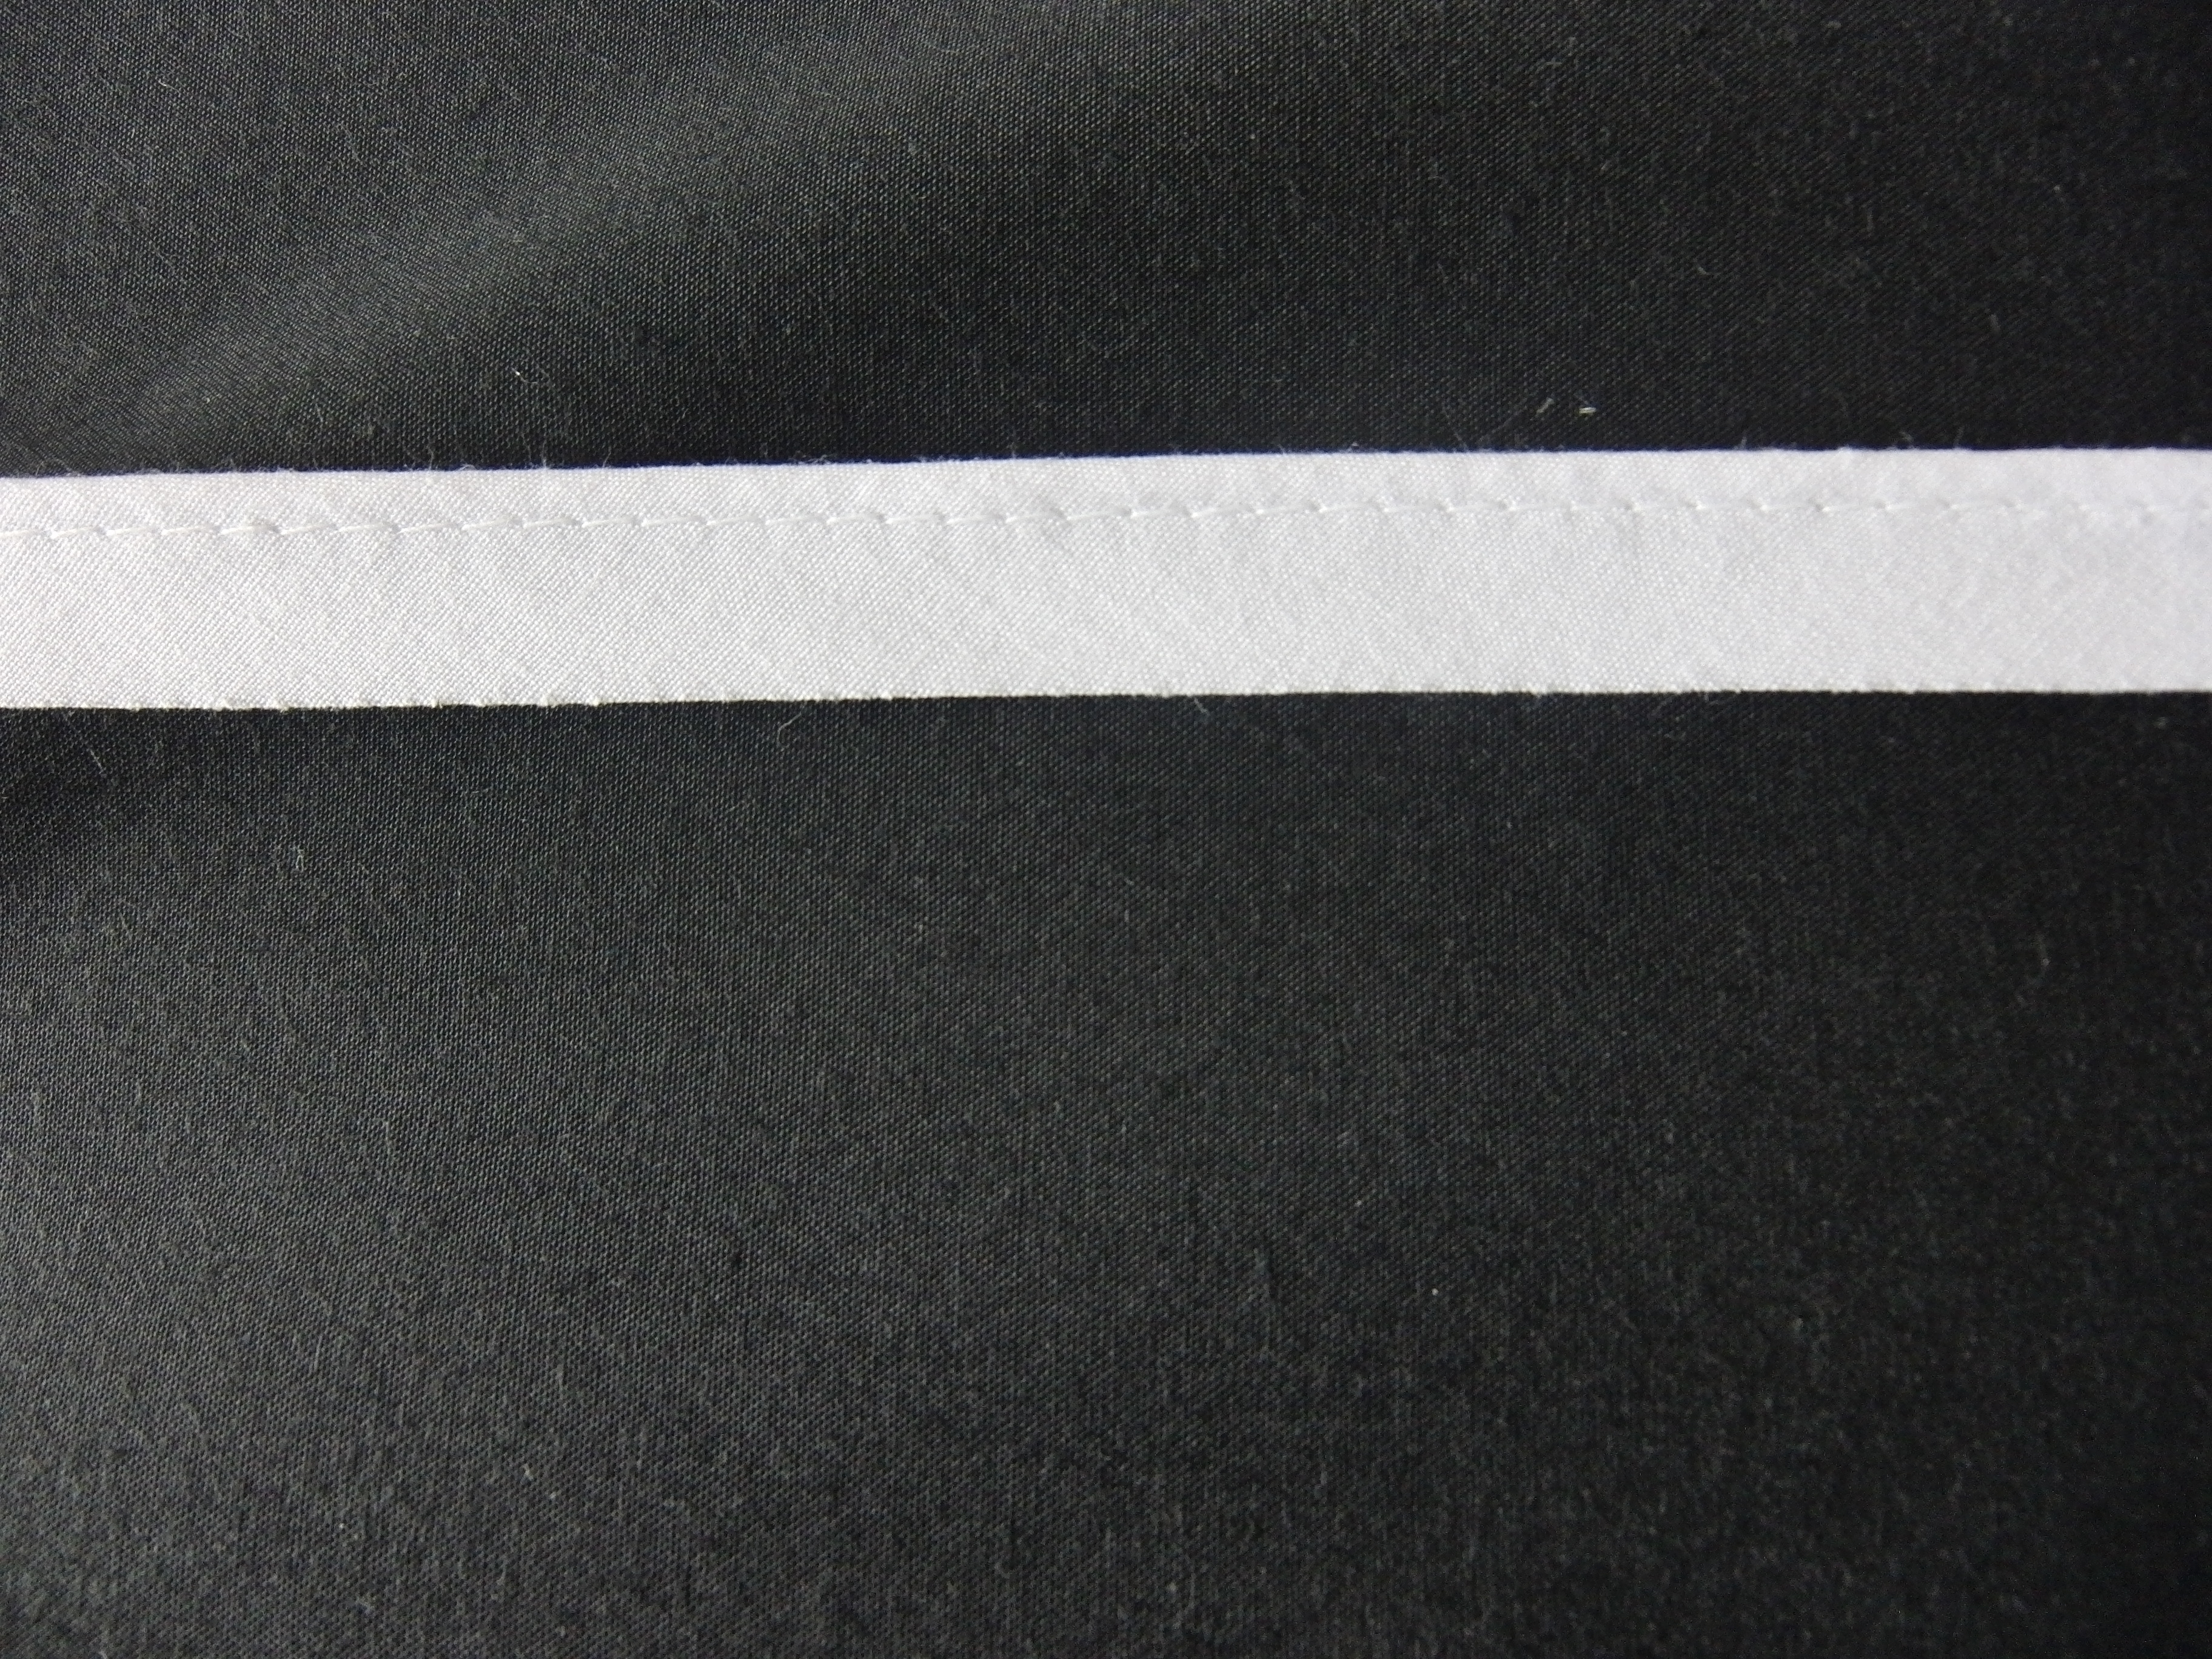 Kederband - Gewicht: 80 g/m² - Länge: 10 m - Breite: 15 mm - Farbe: schwarz